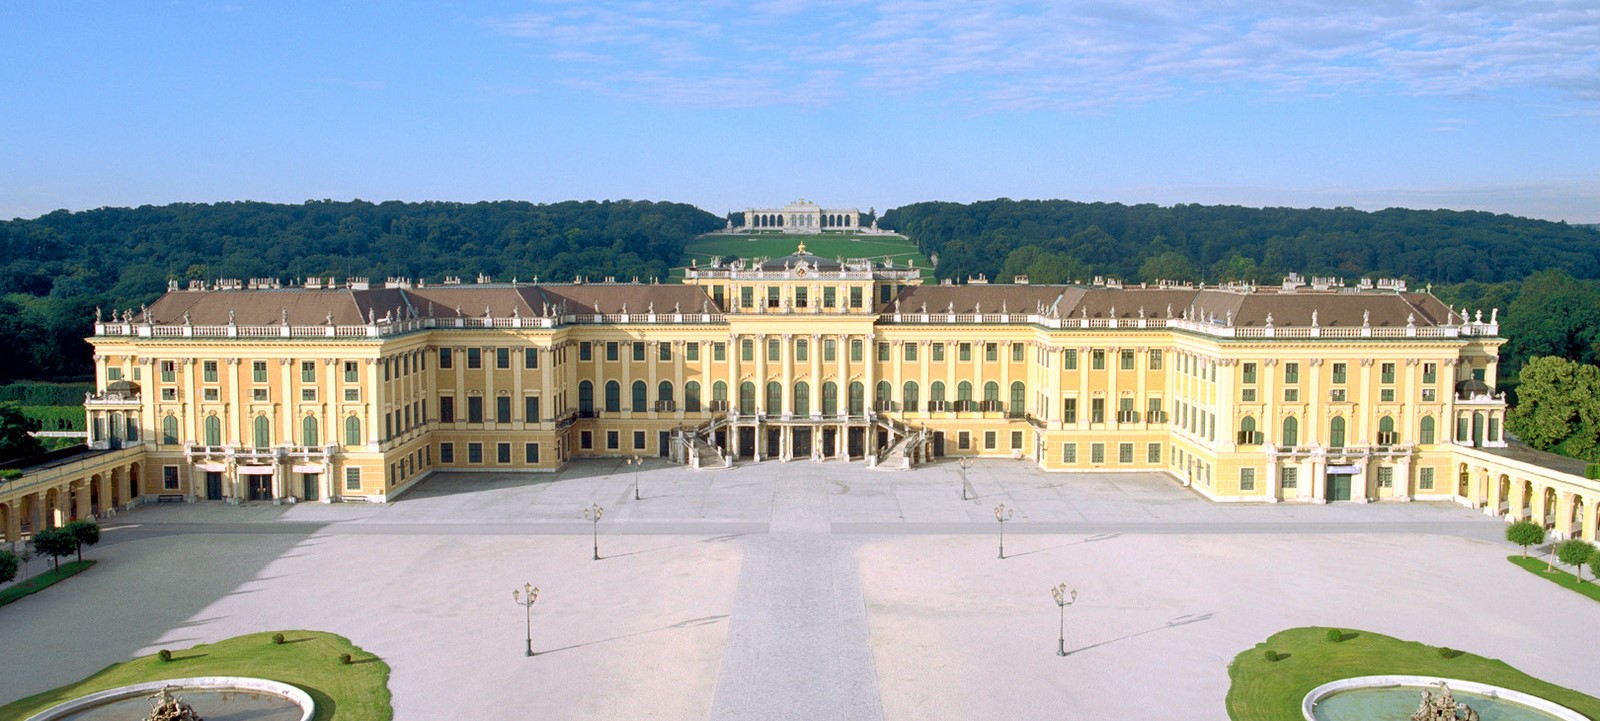 The Imperial Palace of Schonbrunn, Schönbrunner Schloßstraße 47, 1130 Wien, Austria - Sheet3